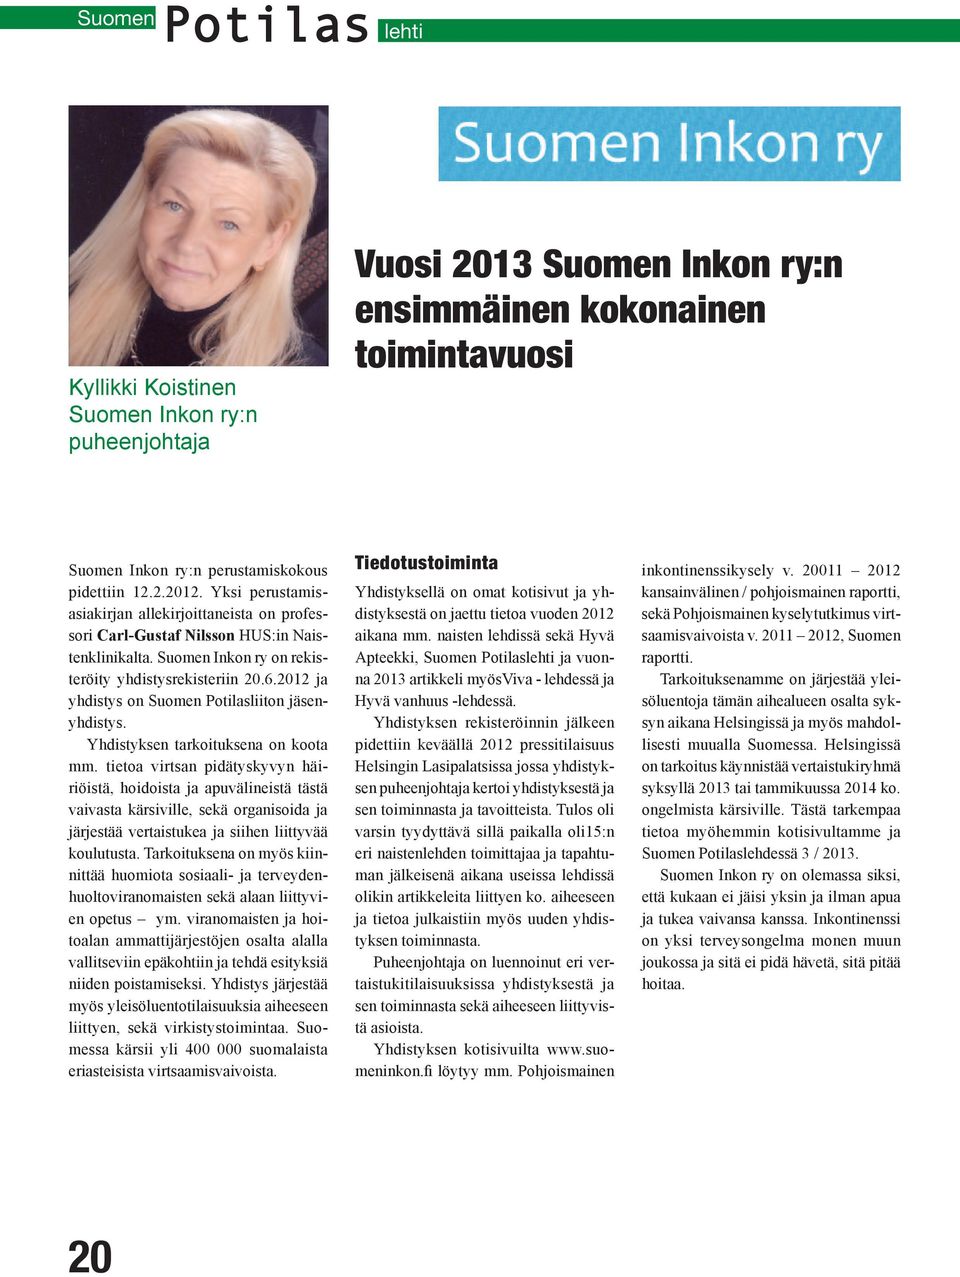 2012 ja yhdistys on Suomen Potilasliiton jäsenyhdistys. Yhdistyksen tarkoituksena on koota mm.